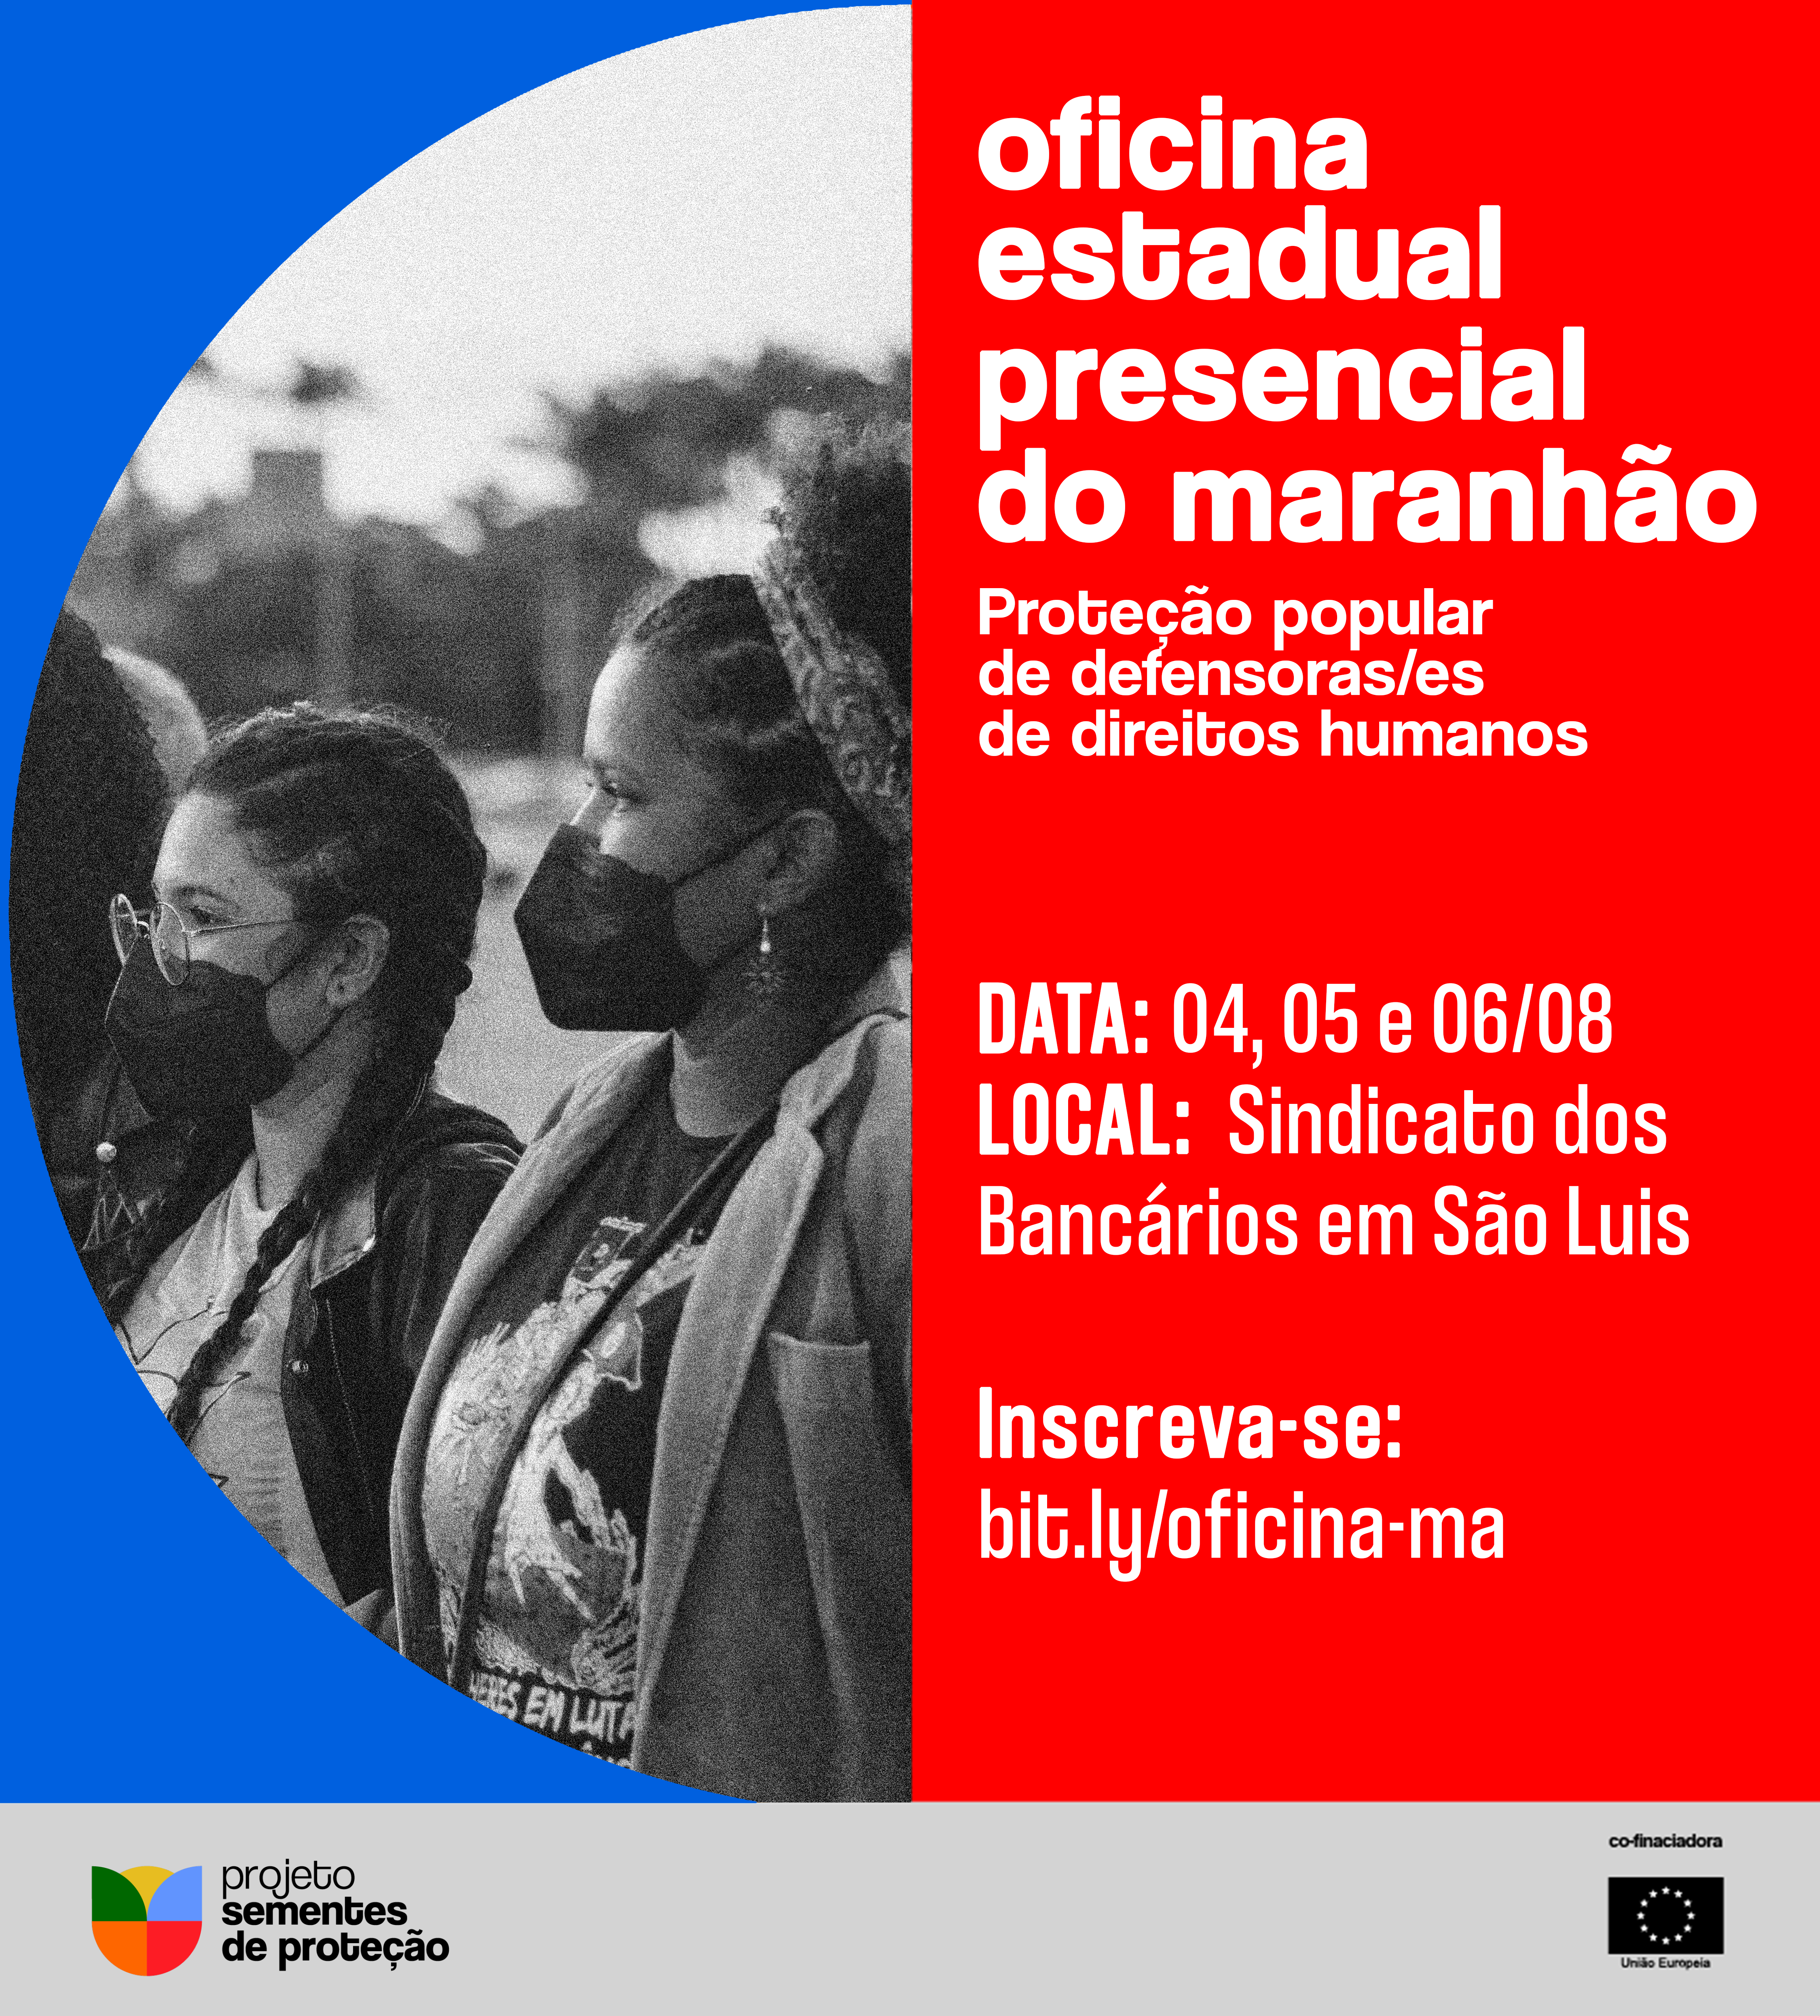 Oficina Estadual do Maranhão